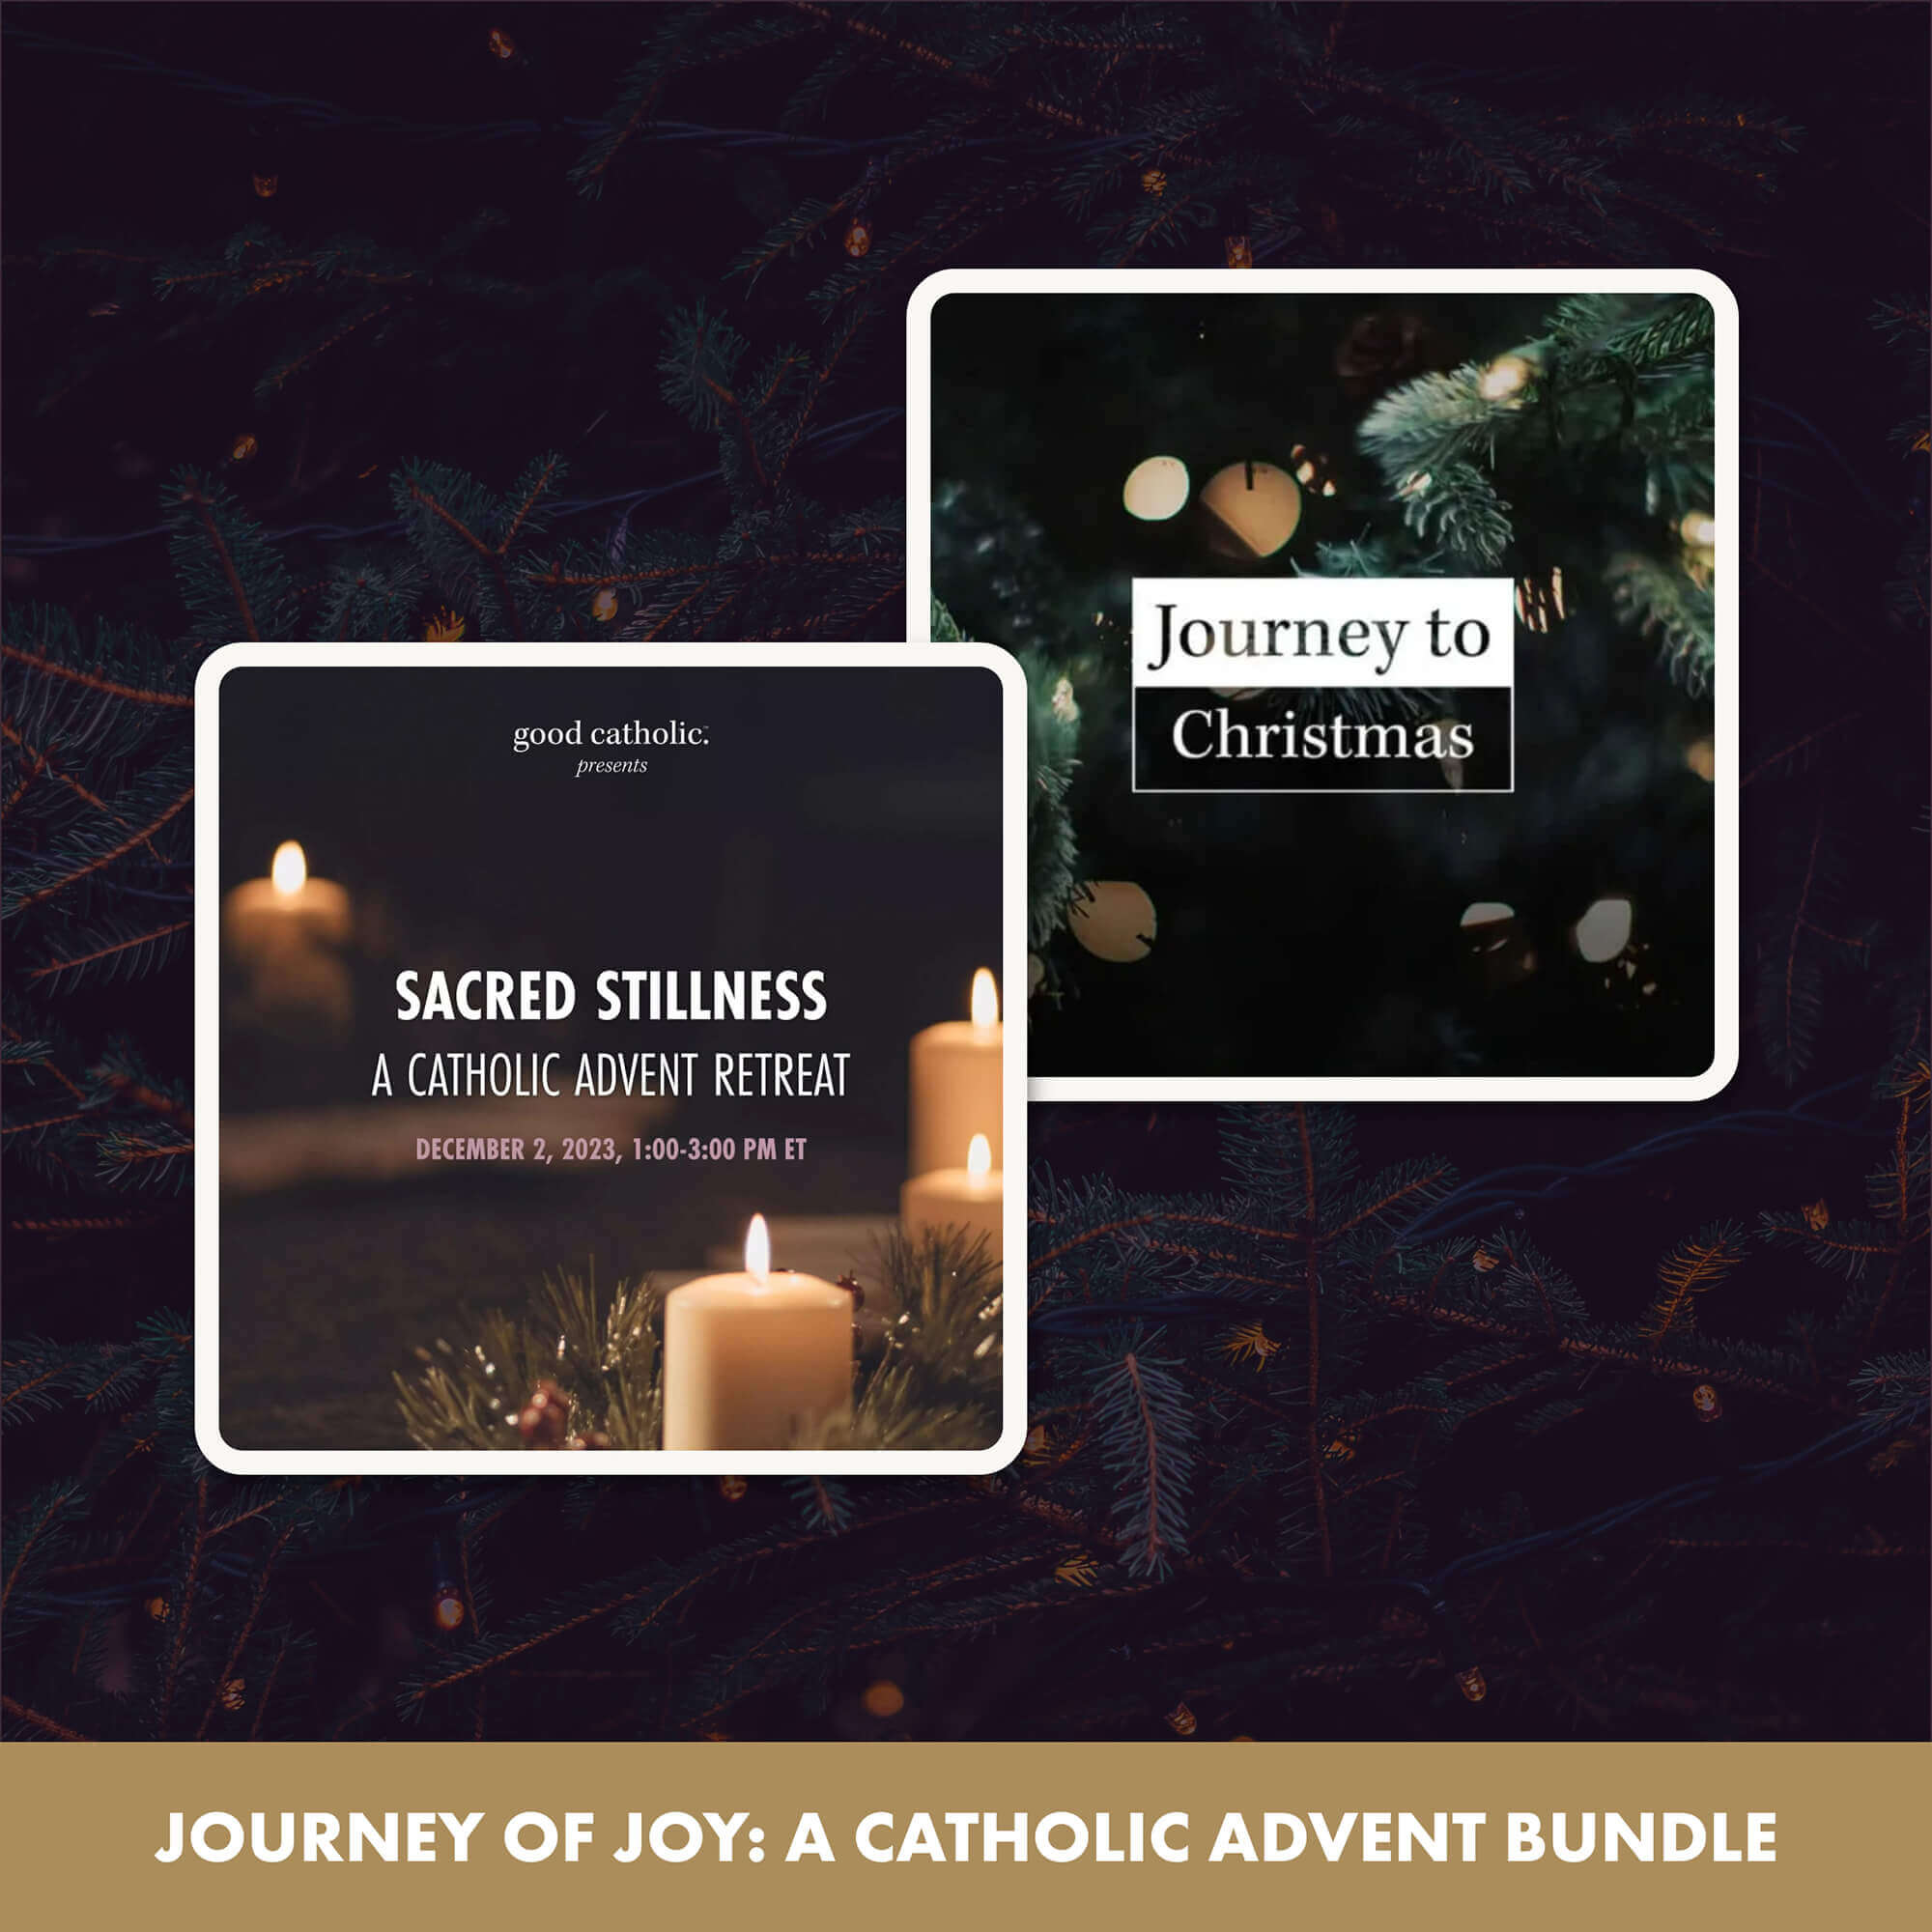 Journey of Joy: A Catholic Advent Bundle